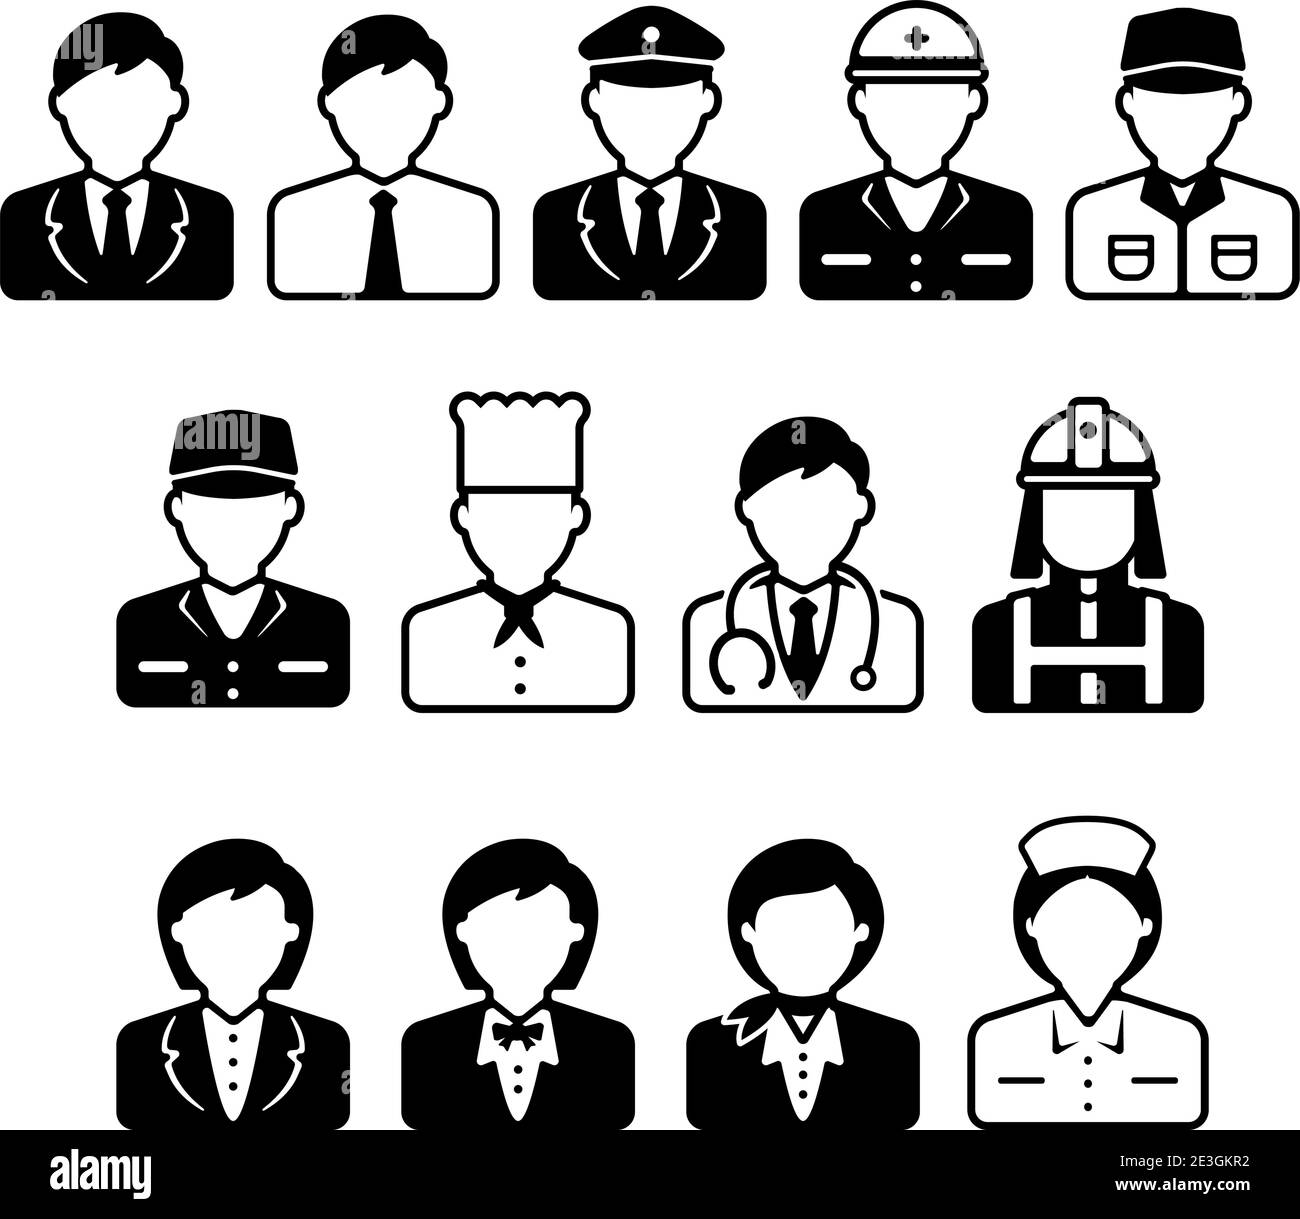 Arbeiter Avatar Icon Illustration Set (Oberkörper) - Business Person, blue collar worker, Polizei Mann, Koch, Arzt etc. Stock Vektor